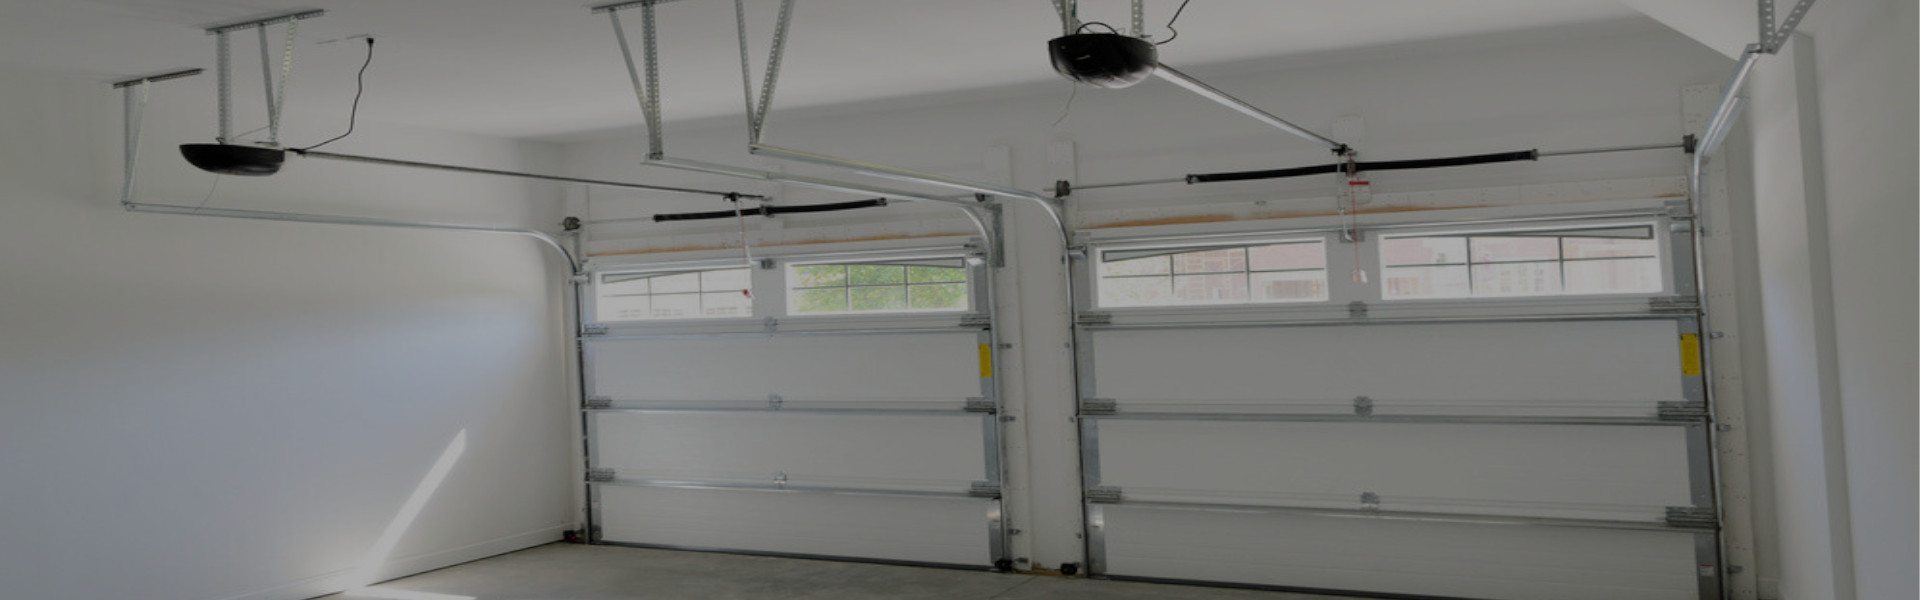 Slider Garage Door Repair, Glaziers in Brixton, SW2